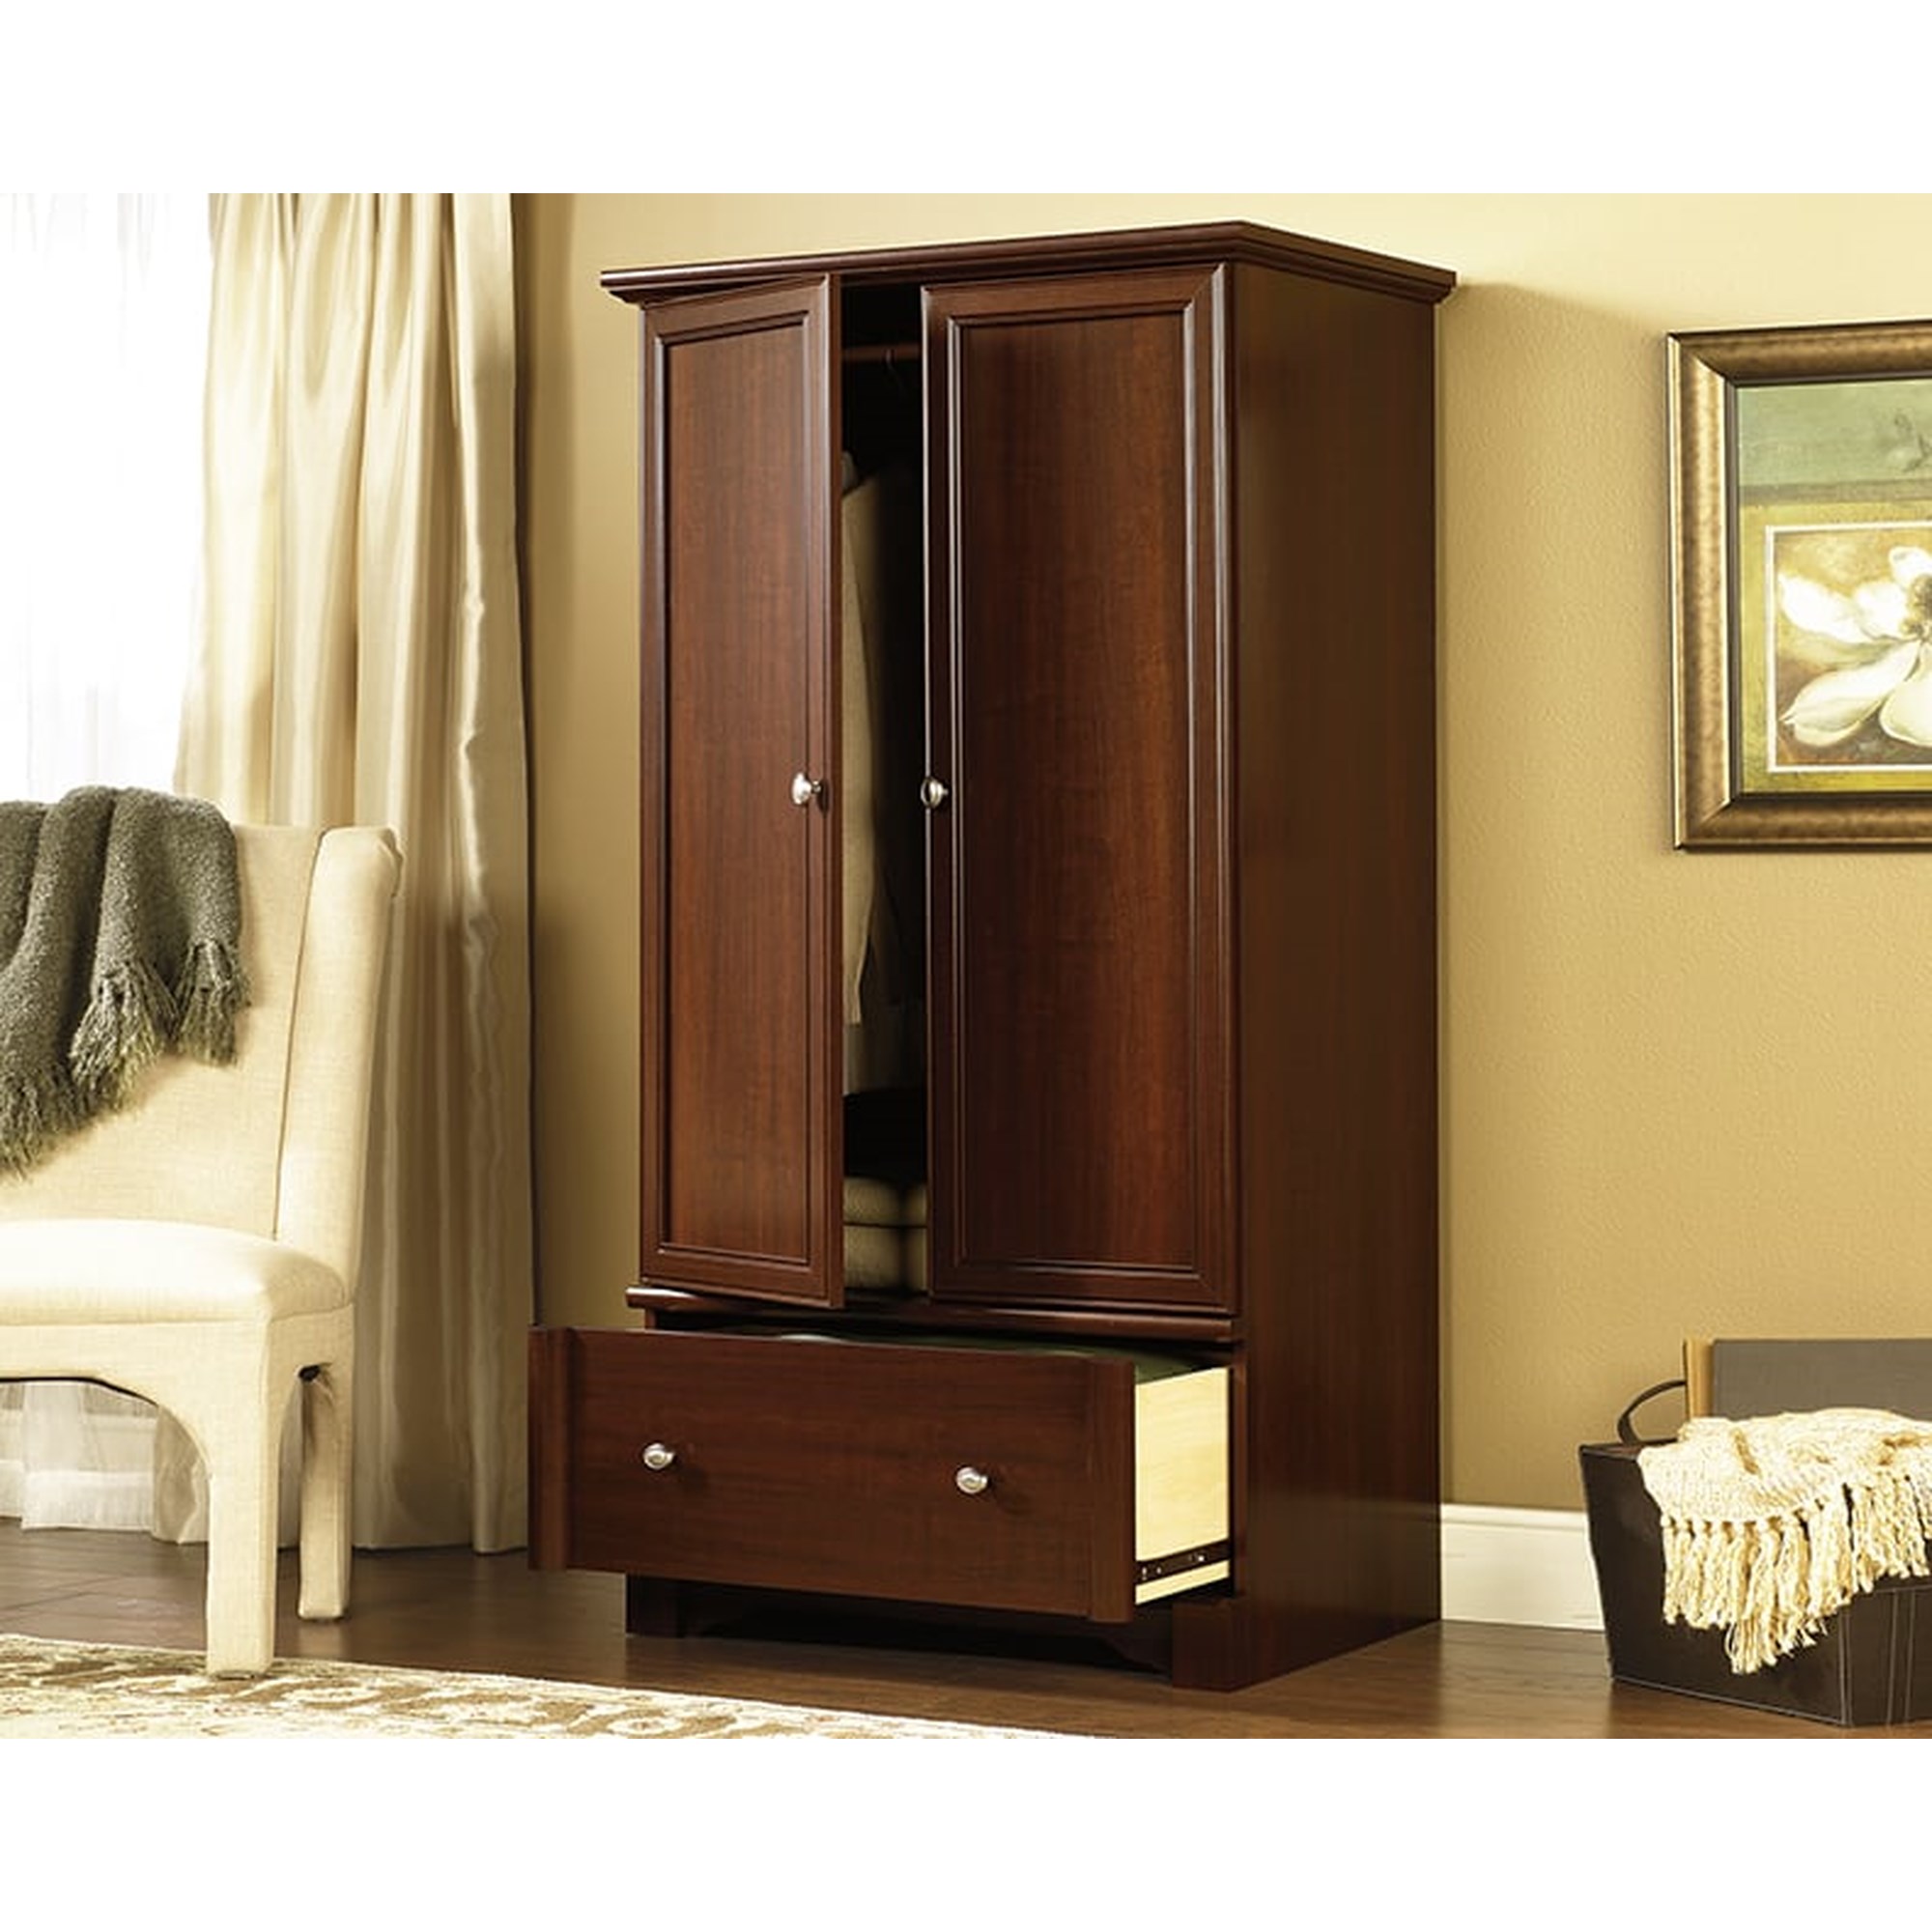 Shop our Wardrobe/Storage Cabinet by Sauder, 426126